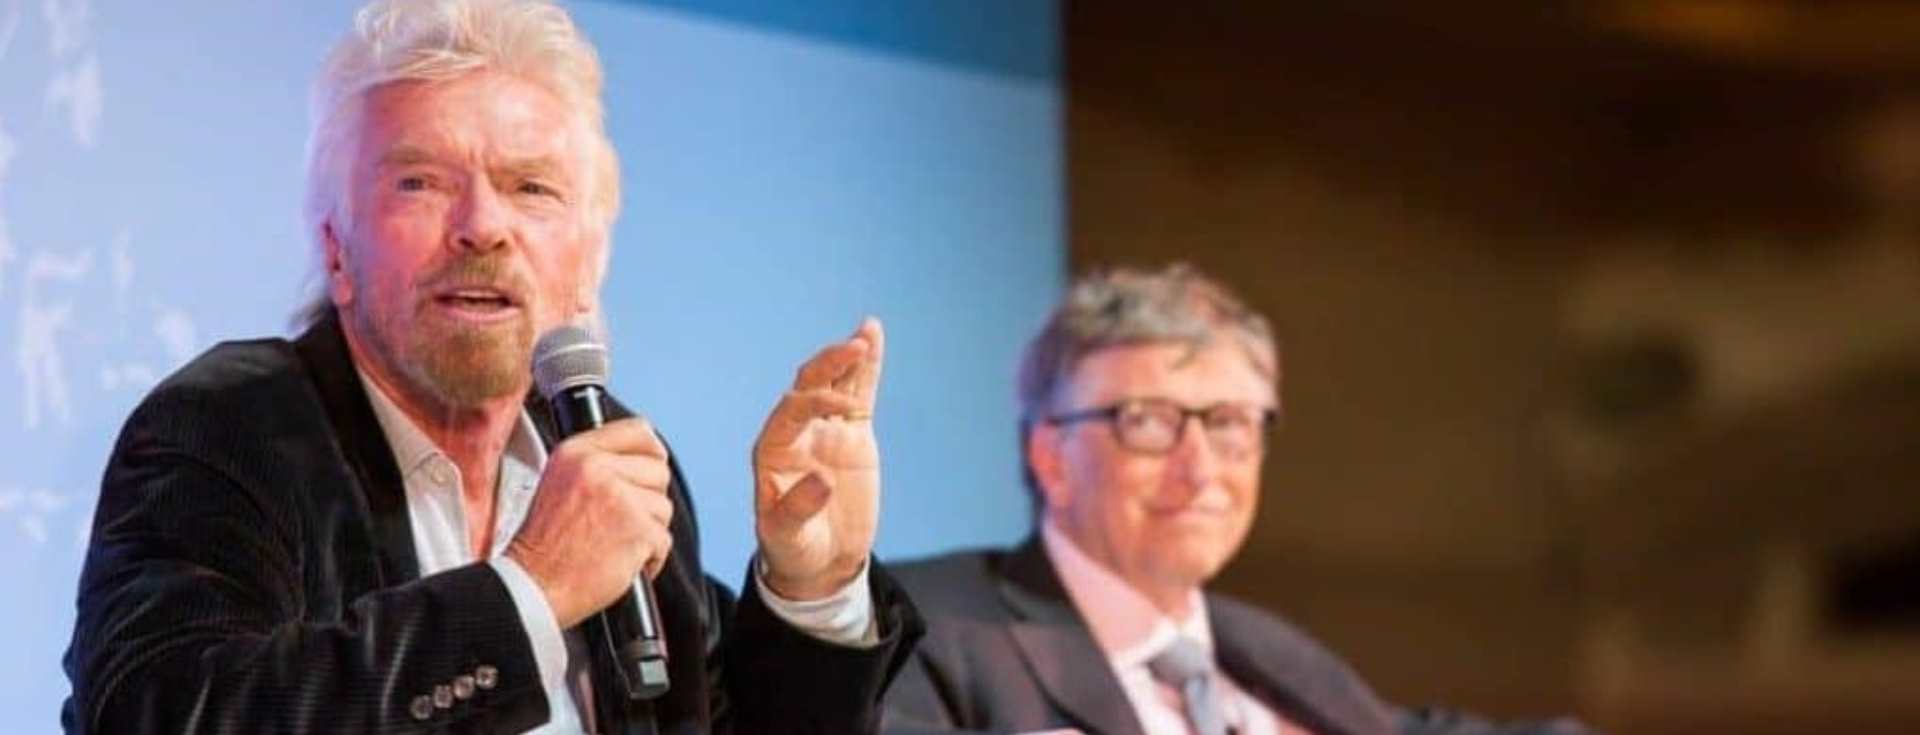 Richard Branson ve Bill Gates’in Ortak Alışkanlıkları